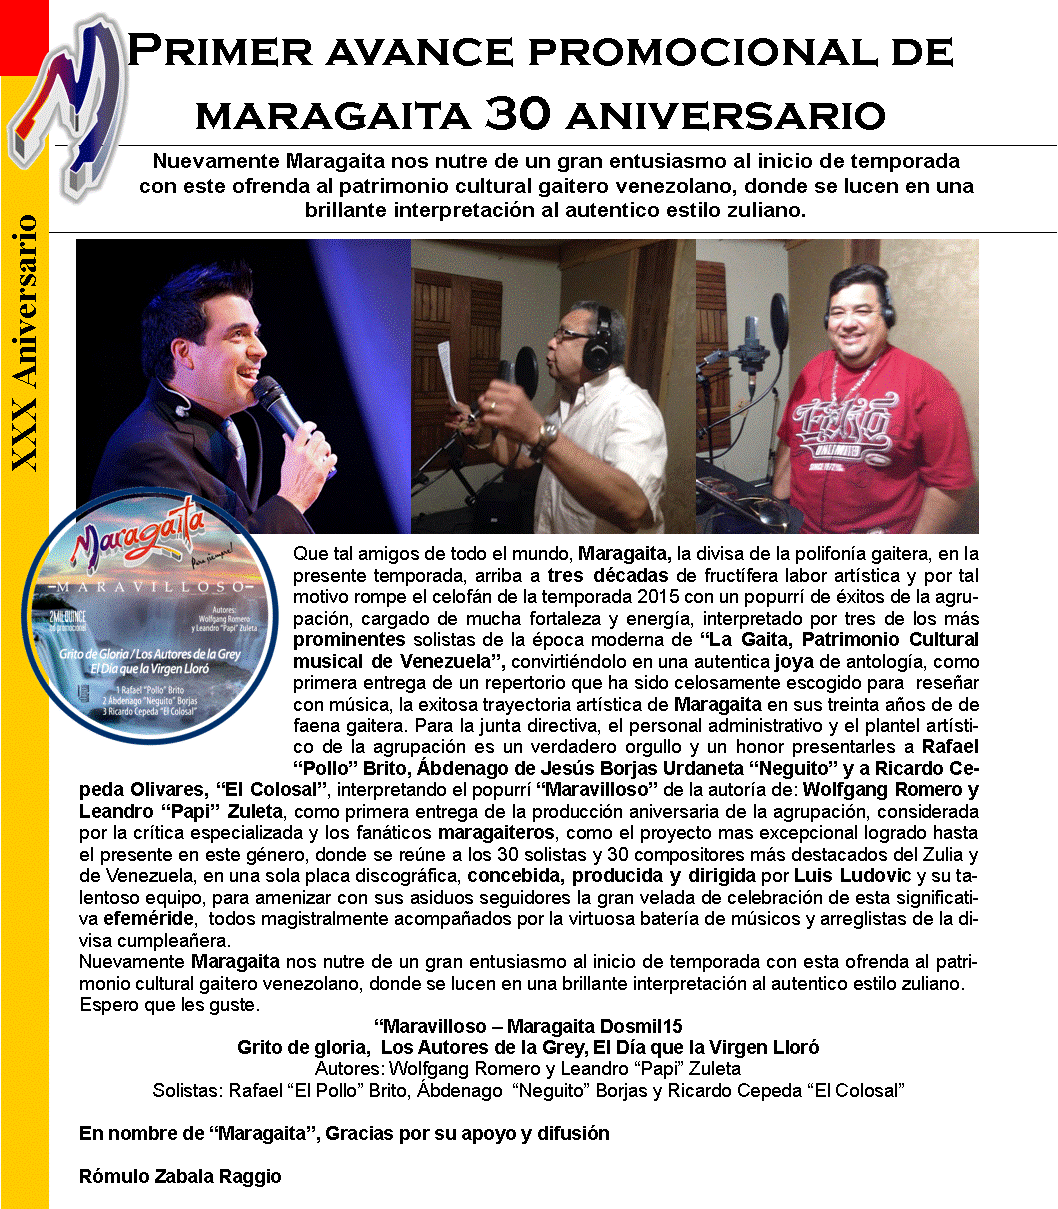 Maragaita estrena su primer avance promocional de su placa aniversaria 30 años de una hostpria